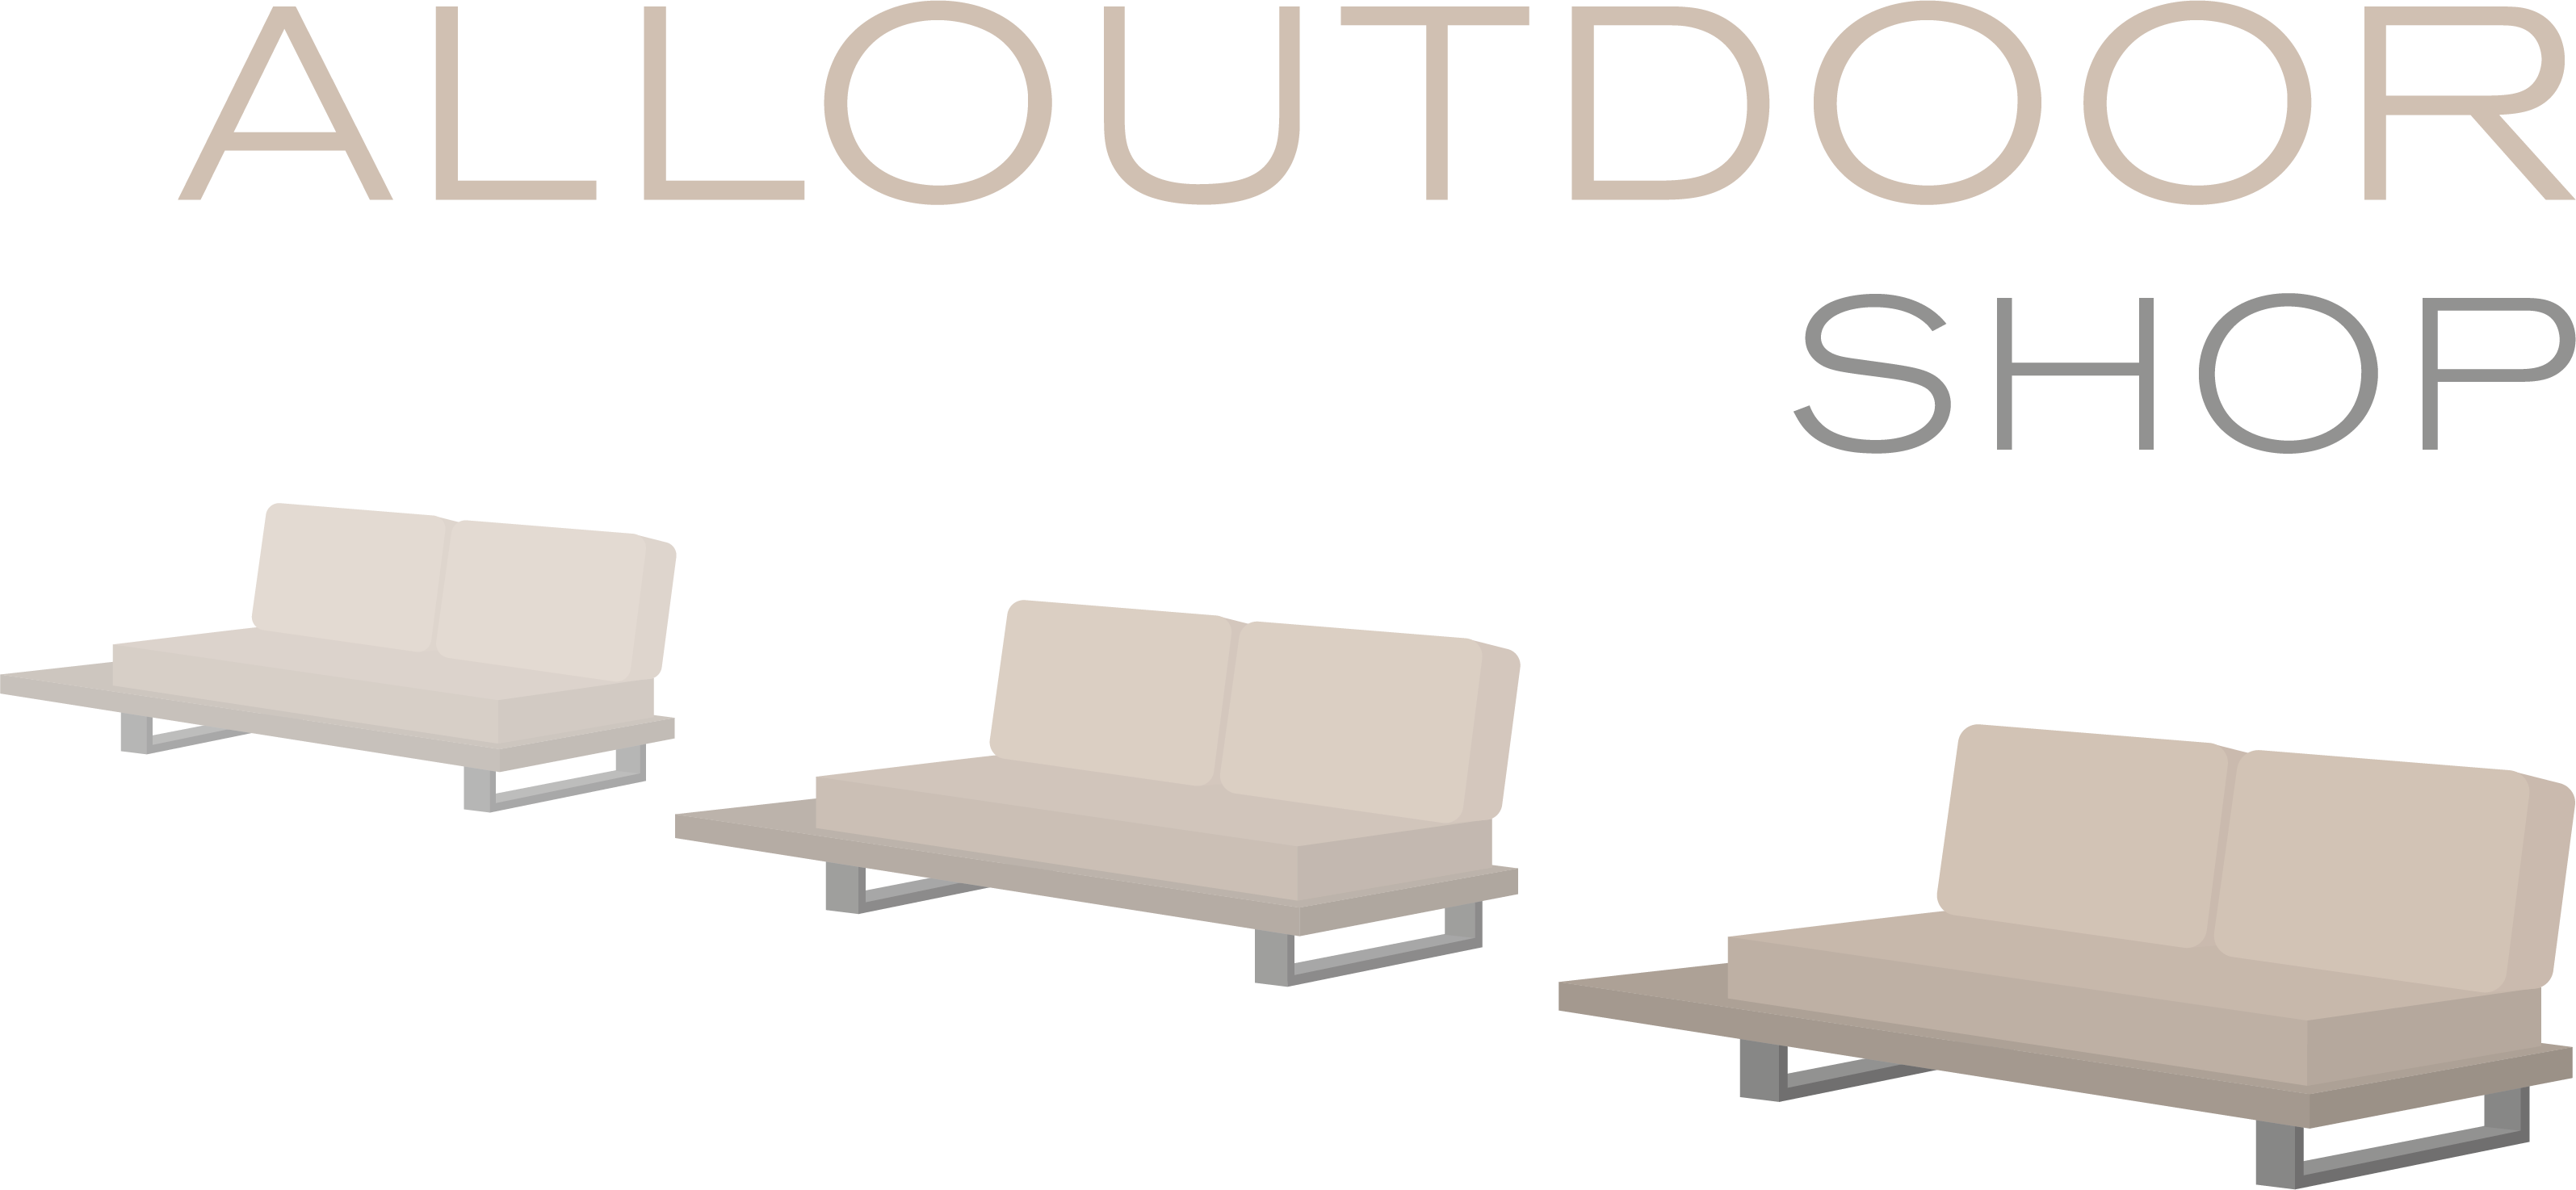 Alloutdoor Shop Logo